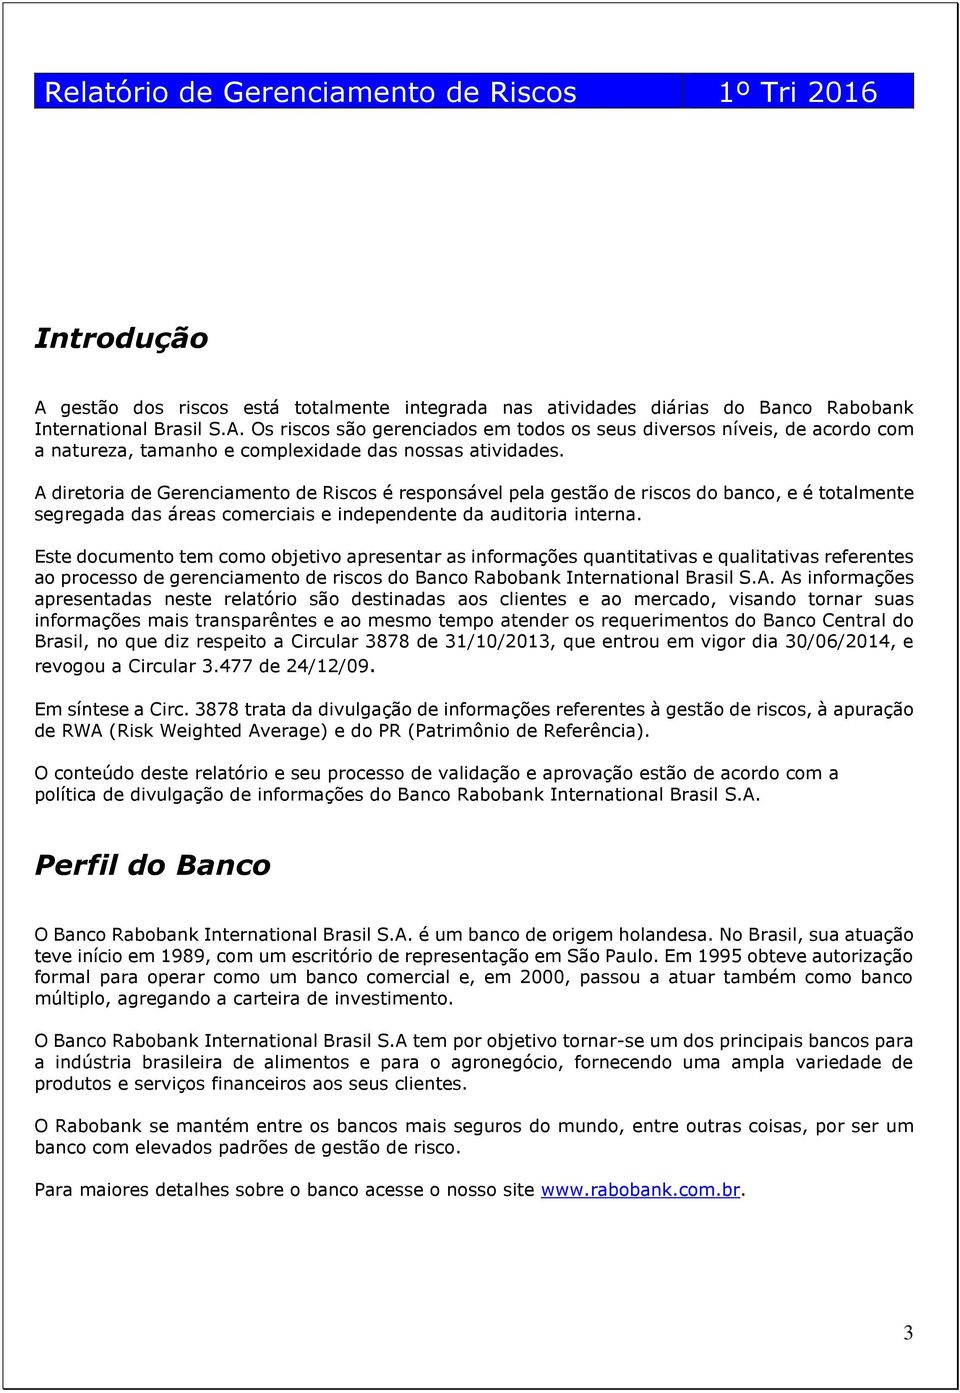 Este documento tem como objetivo apresentar as informações quantitativas e qualitativas referentes ao processo de gerenciamento de riscos do Banco Rabobank International Brasil S.A.